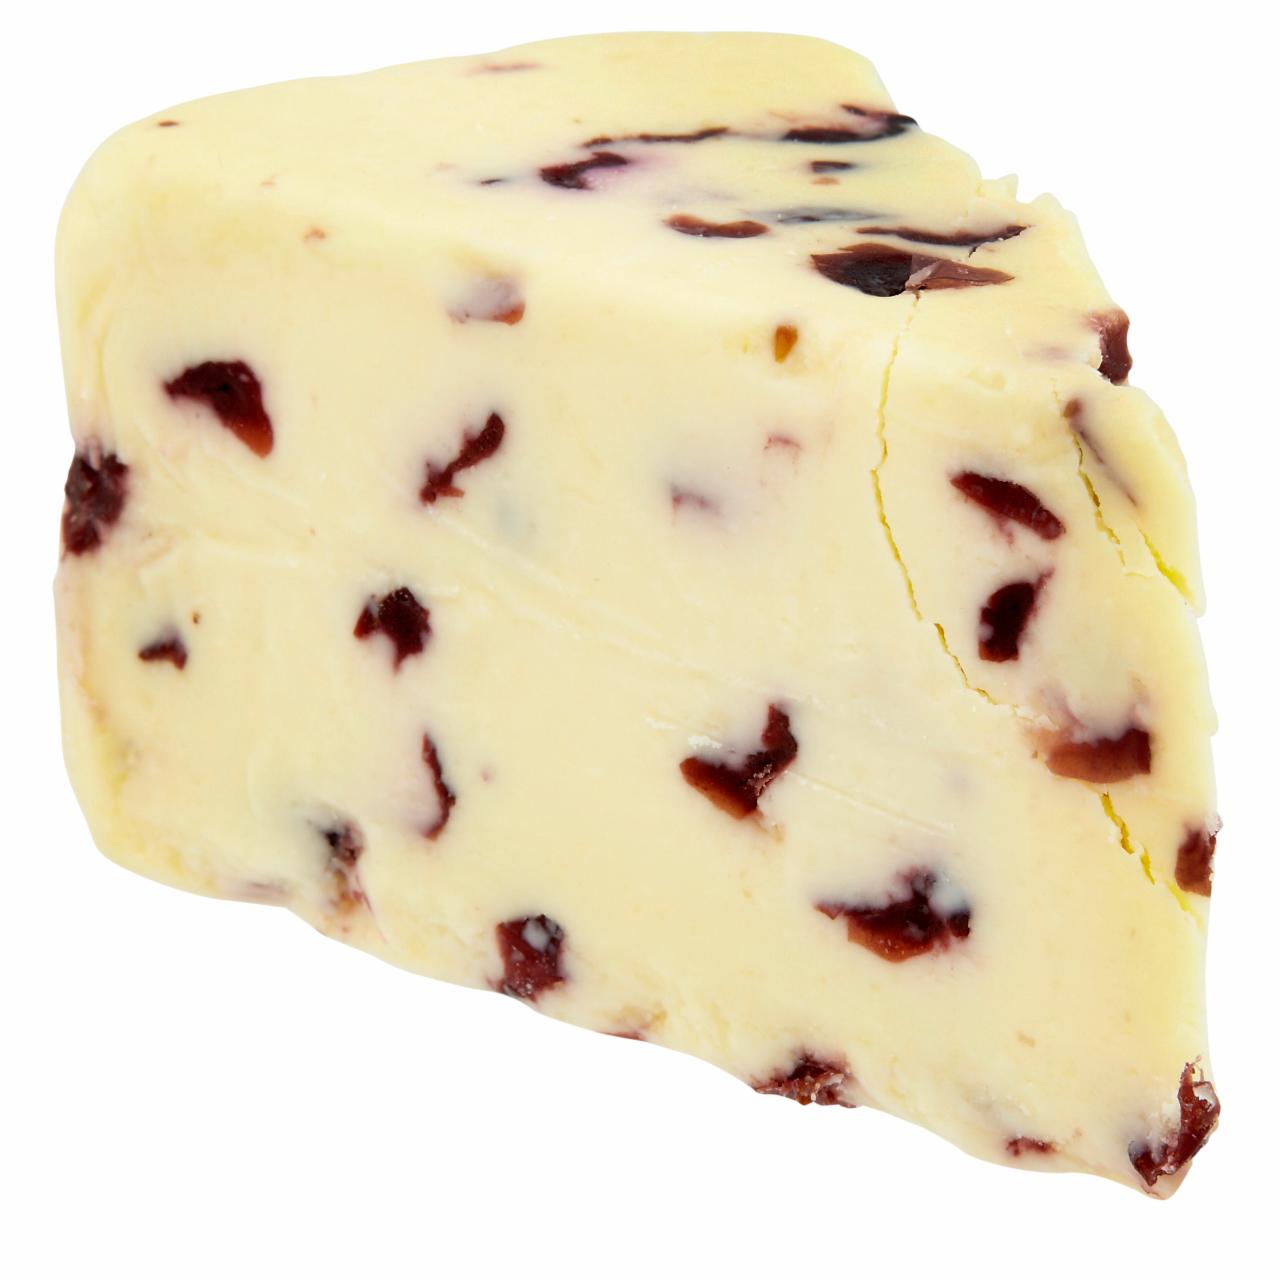 Képek - Cheddar jellegű áfonyás zsíros kemény sajt